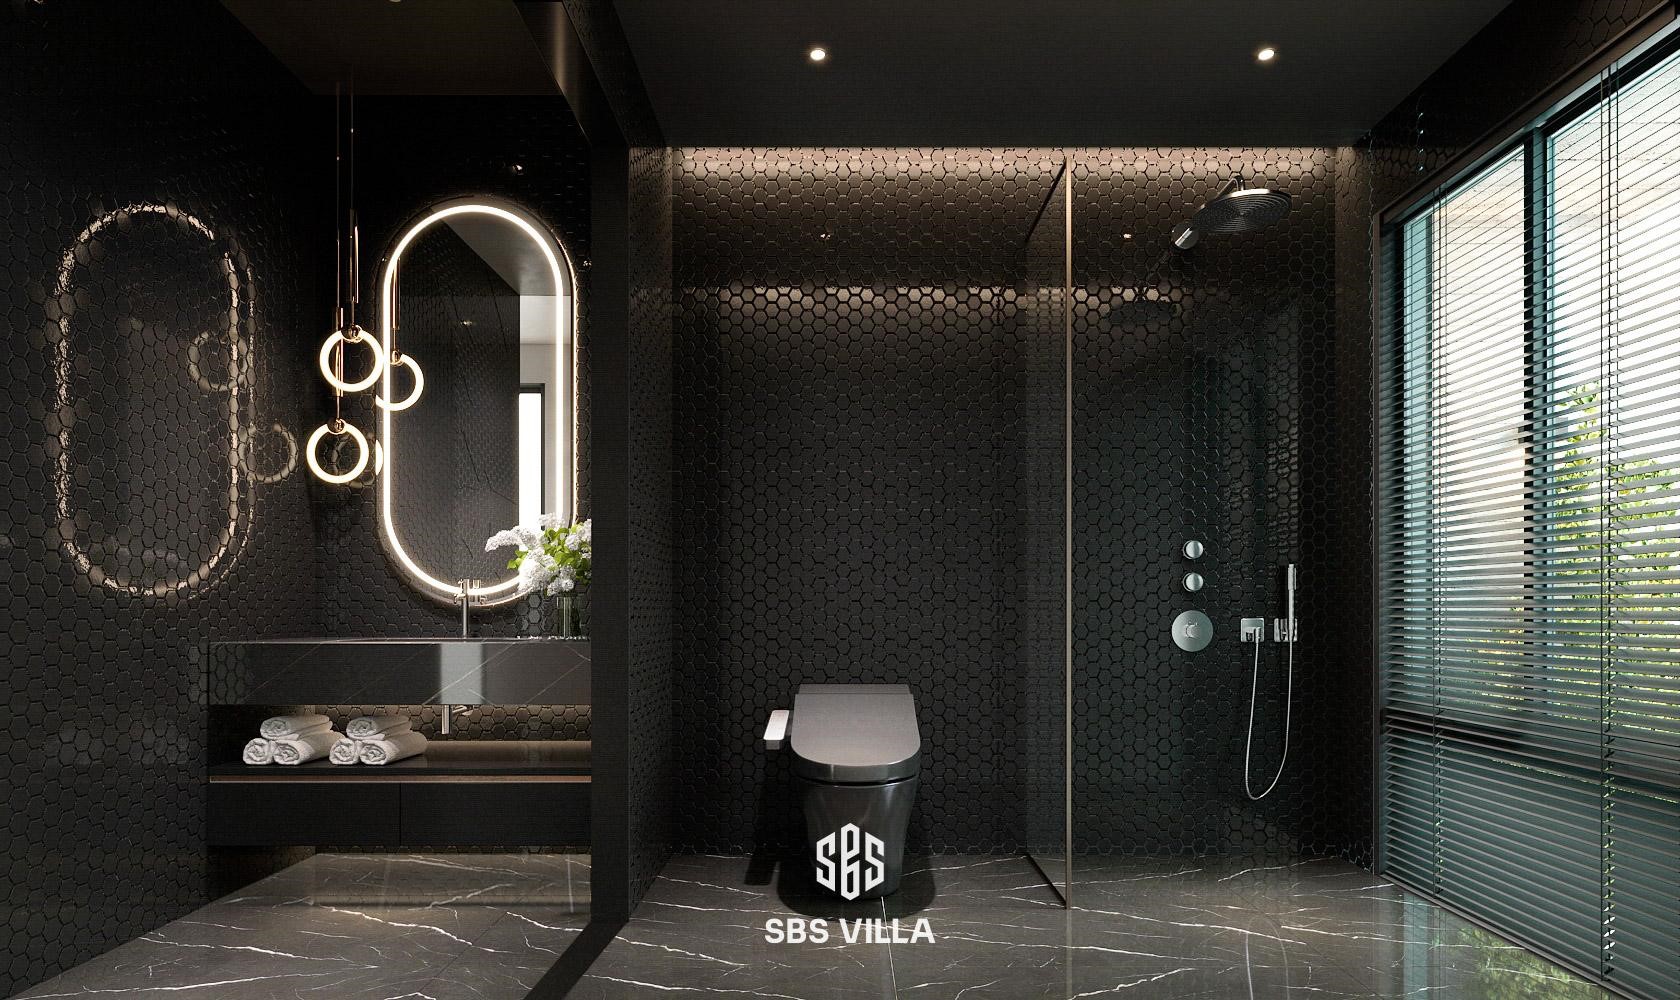 Khu vực phòng tắm nổi bật với hệ thống tiện ích đẳng cấp. Từ chi tiết bồn vệ sinh tự động, gương cảm ứng cho đến hệ thống vòi sen đều góp phần tôn lên sự tiện nghi và sang trọng của không gian sống